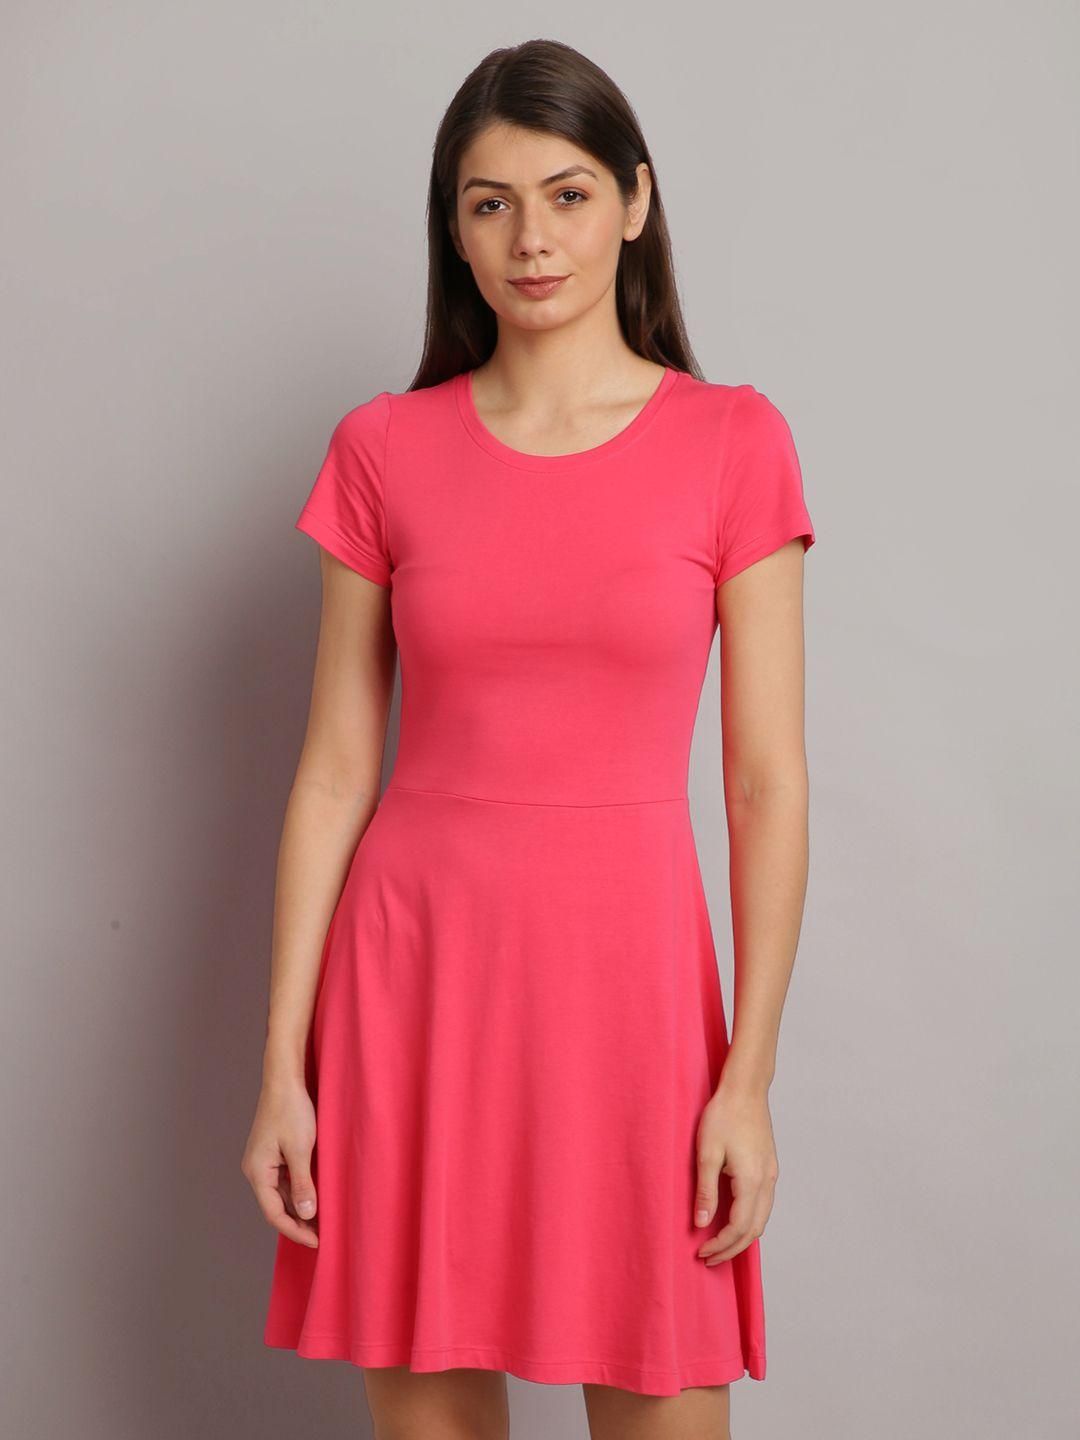 UrGear Women's Plus Size Cotton Blend Solid Round Neck Casual Dress